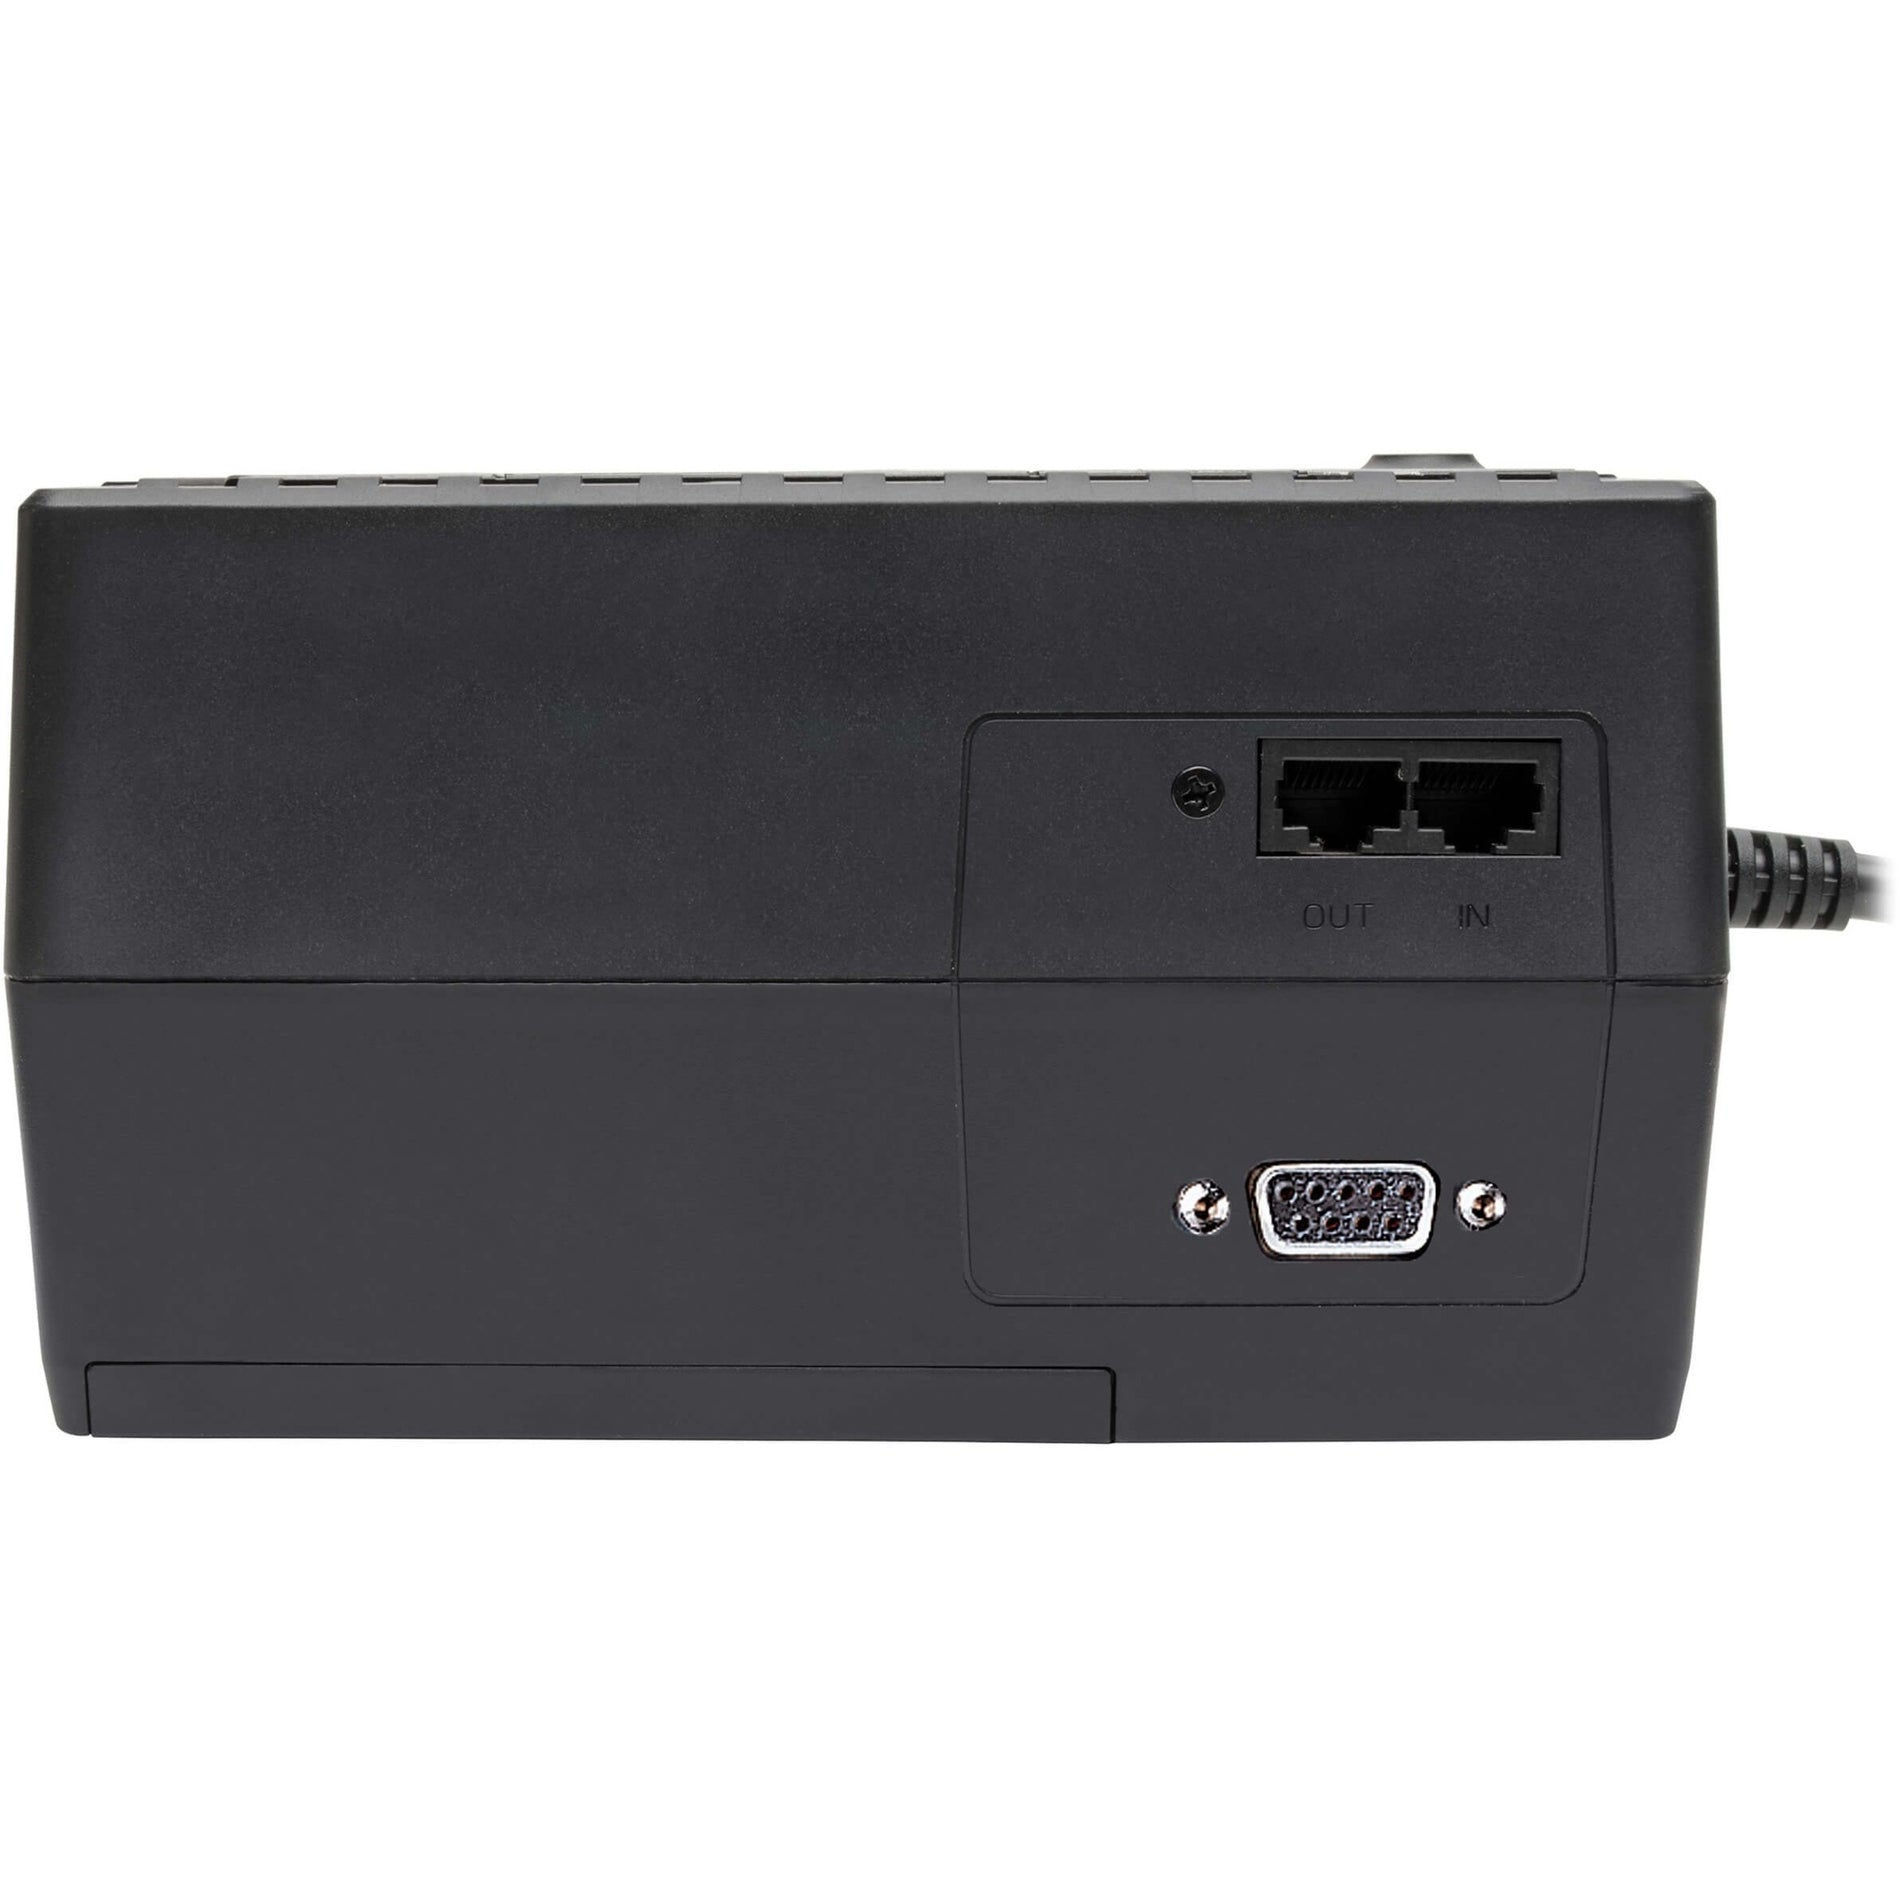 Tripp Lite INTERNET550SER Internet Office 550VA Wall-mountable Cabinet UPS, Battery Backup, 3 Year Warranty